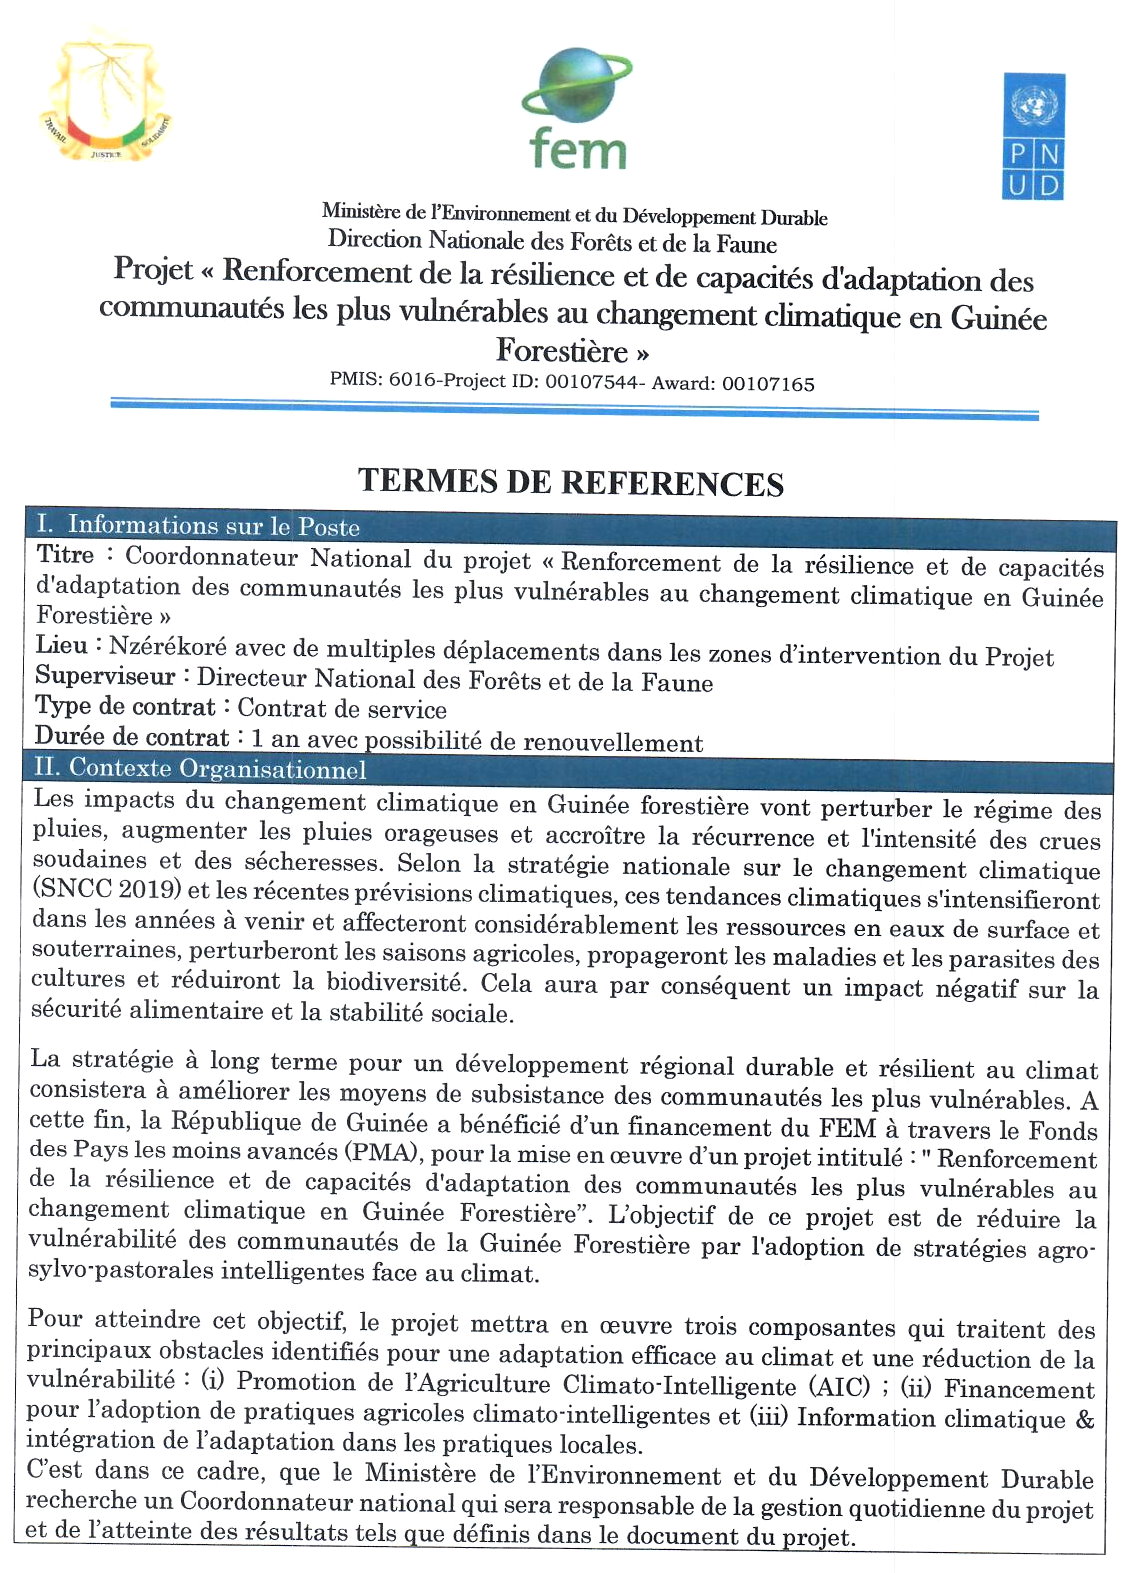  Avis de Recrutement D'un Coordonnateur National du projet « Renforcement de la résilience et de capacités d'adaptation des communautés les plus vulnérables au changement climatique en Guinée Forestière » | Page 1